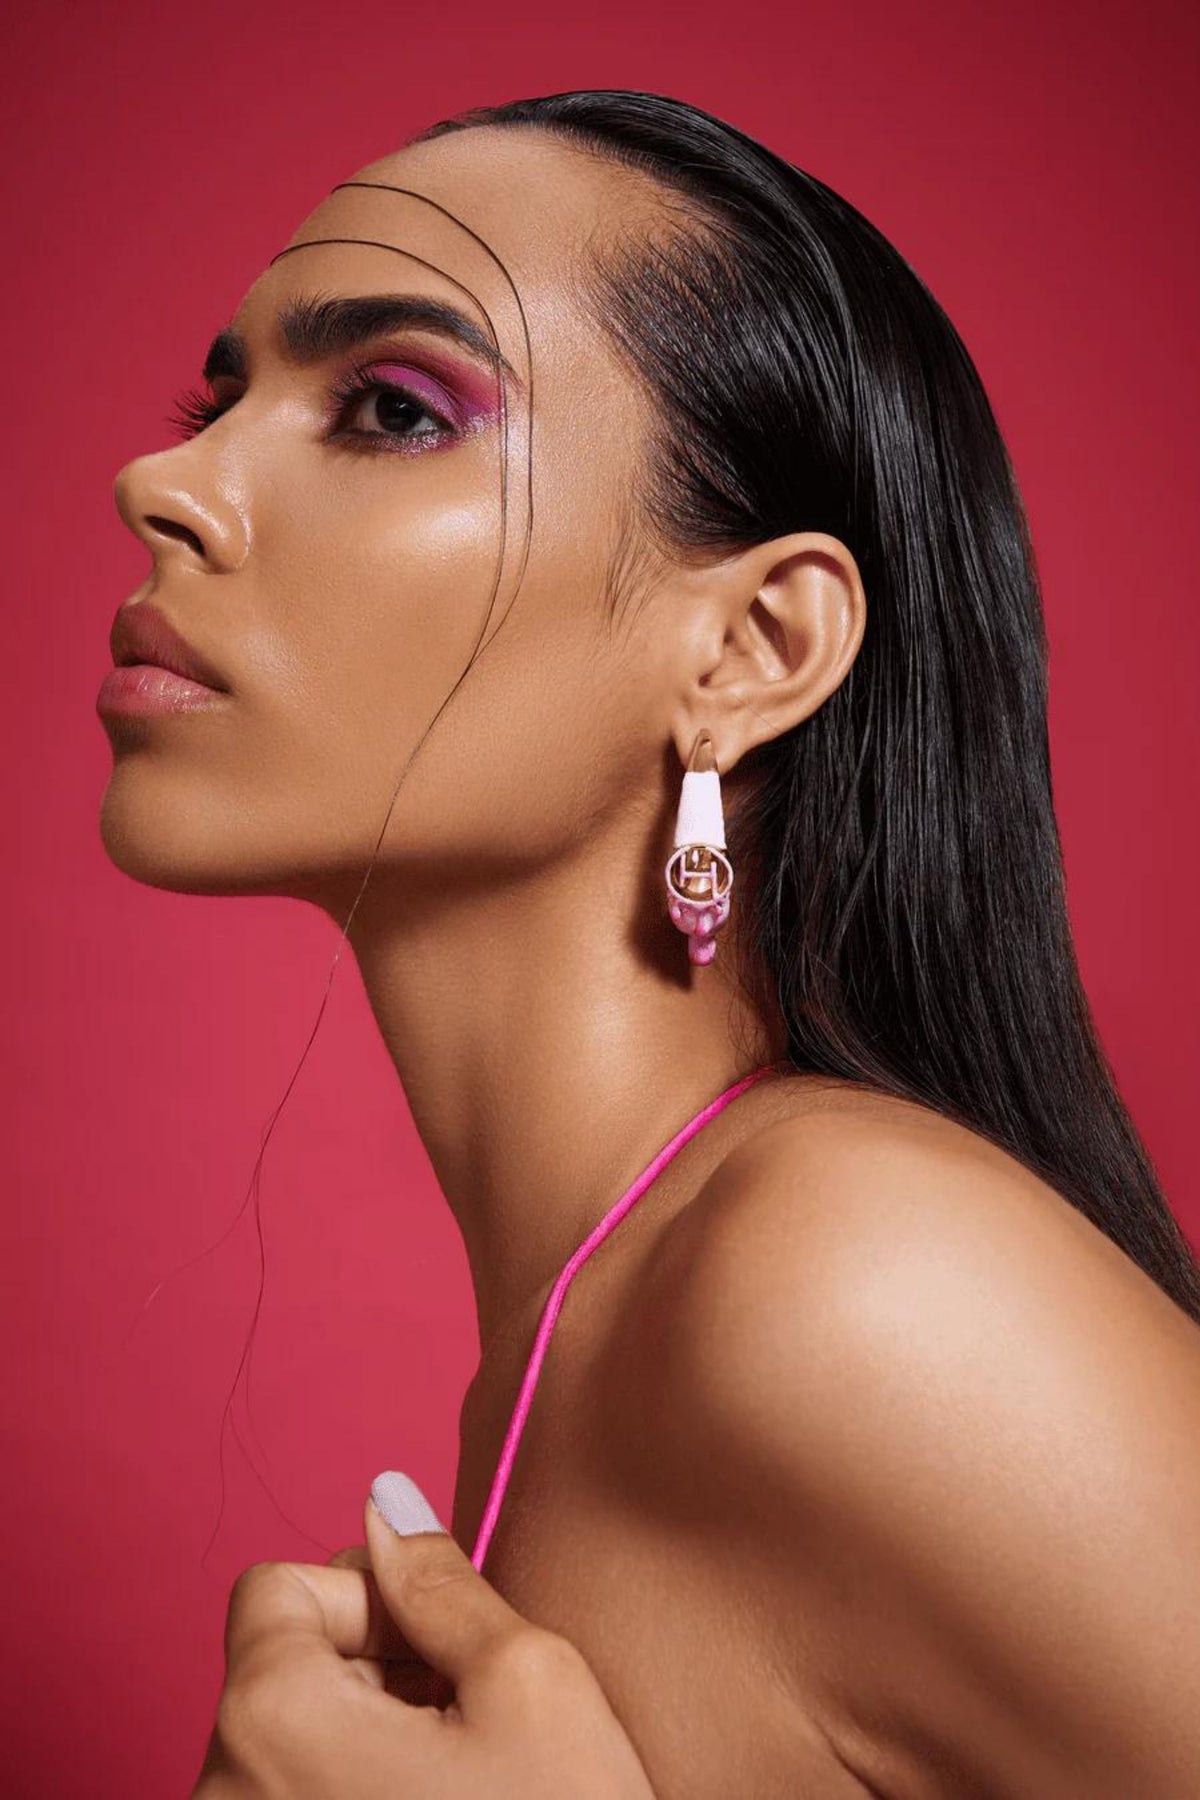 Mini Earrings in Dual Tone Pink